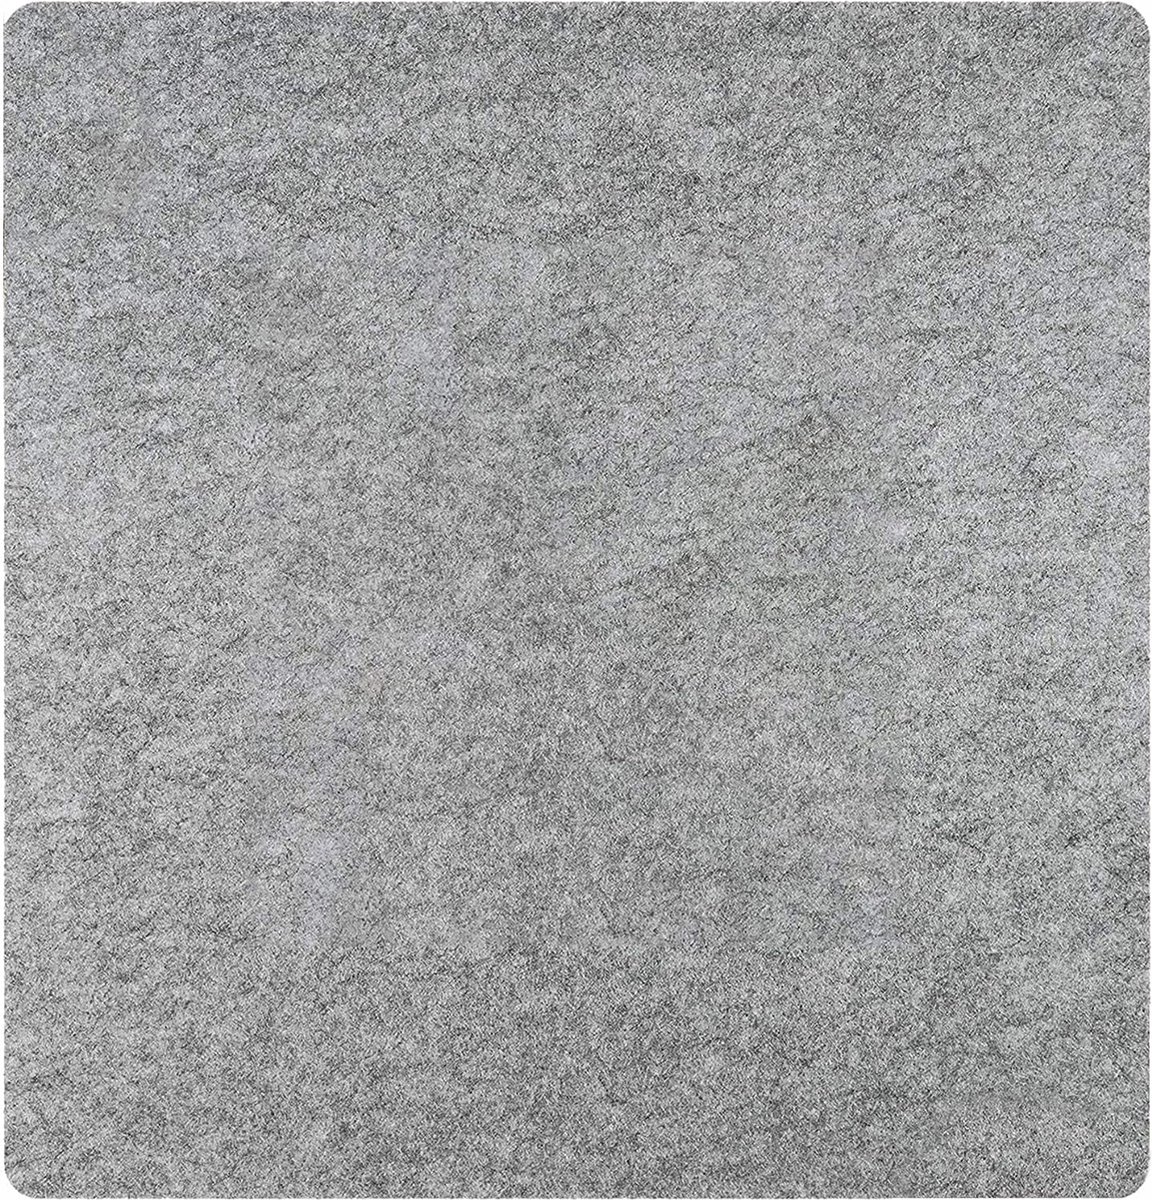 Strijkmat, 33 x 35 cm, 100% Nieuw-Zeelandwol, wolvilt, strijkplank voor precisie-steppen, viltstrijkplank voor quilt